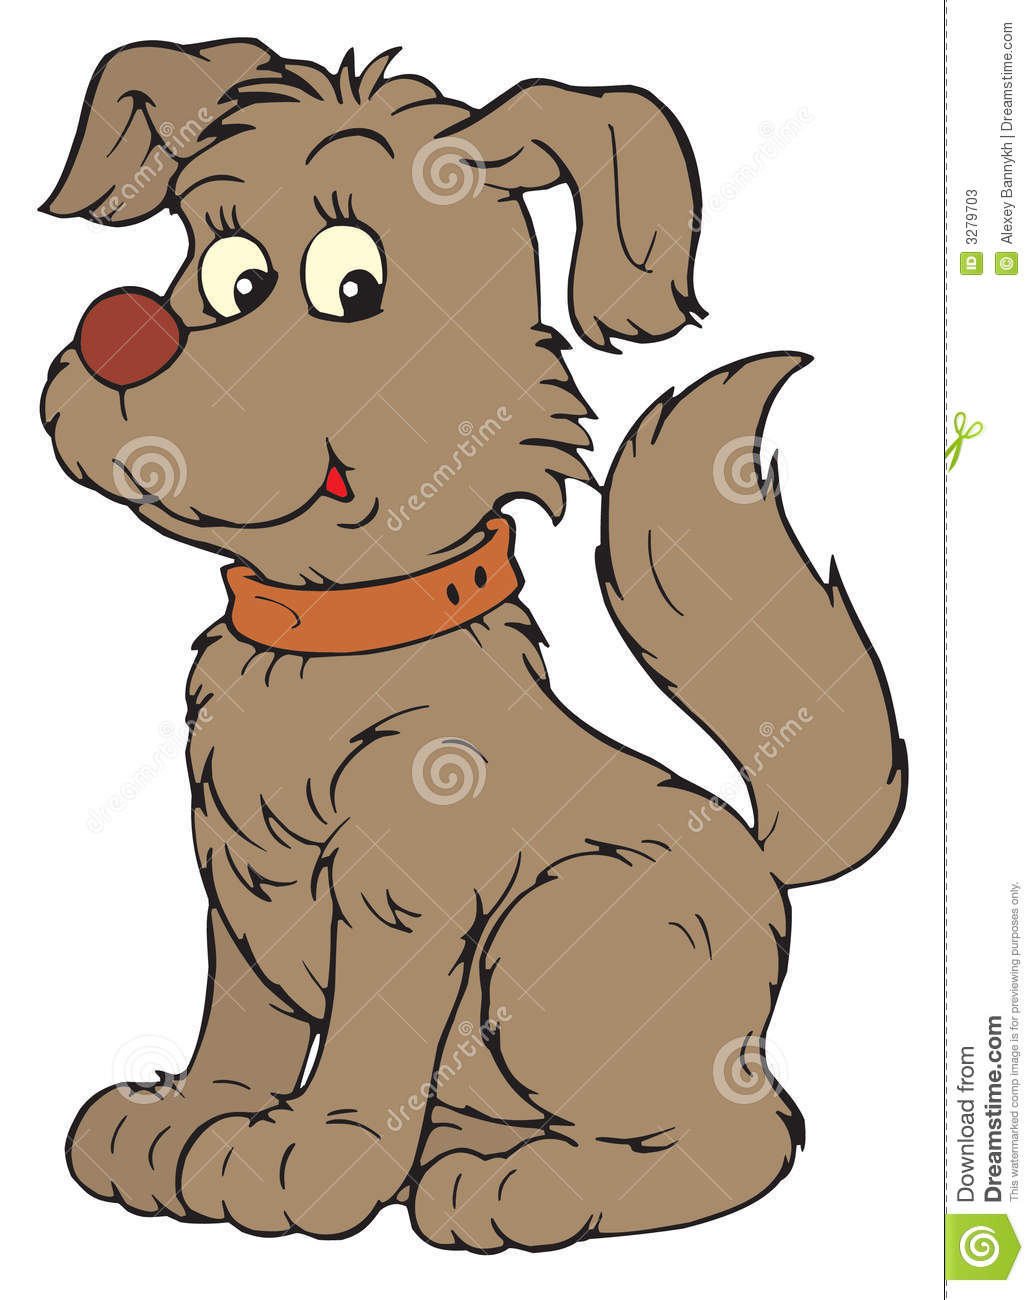 Dog vector clip art stock photos image 3